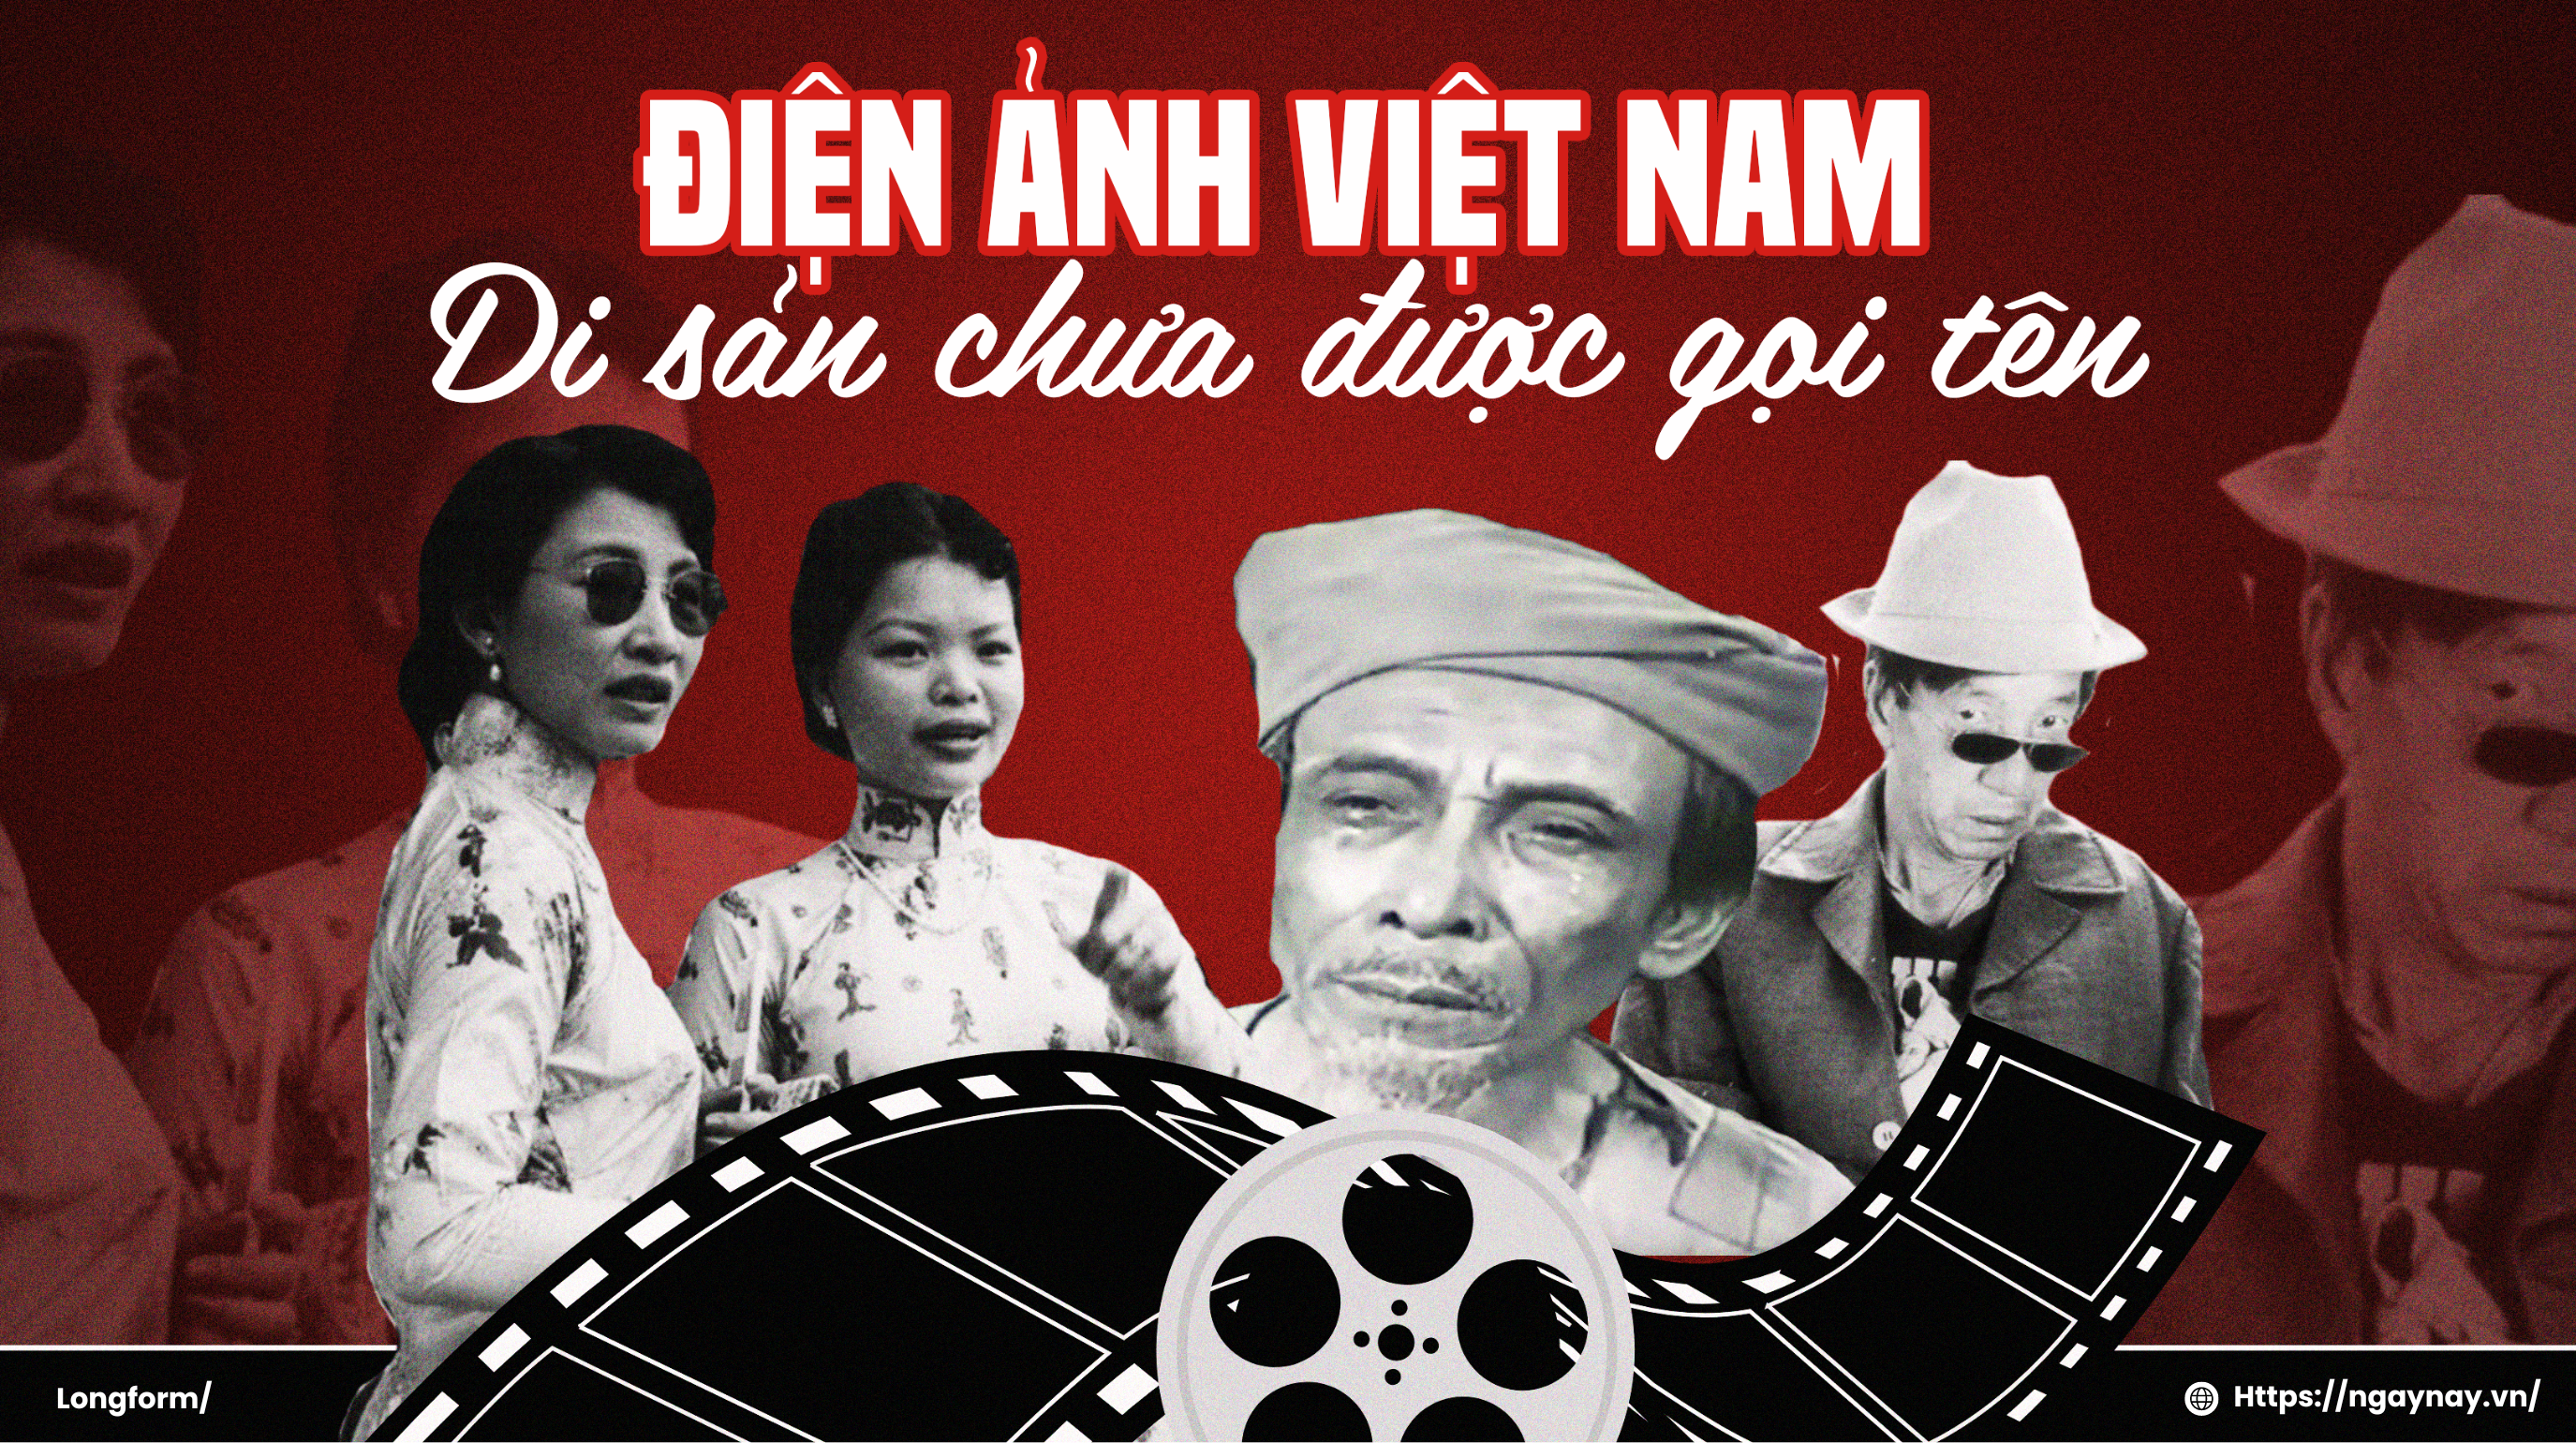 Điện ảnh Việt Nam - Di sản chưa được gọi tên